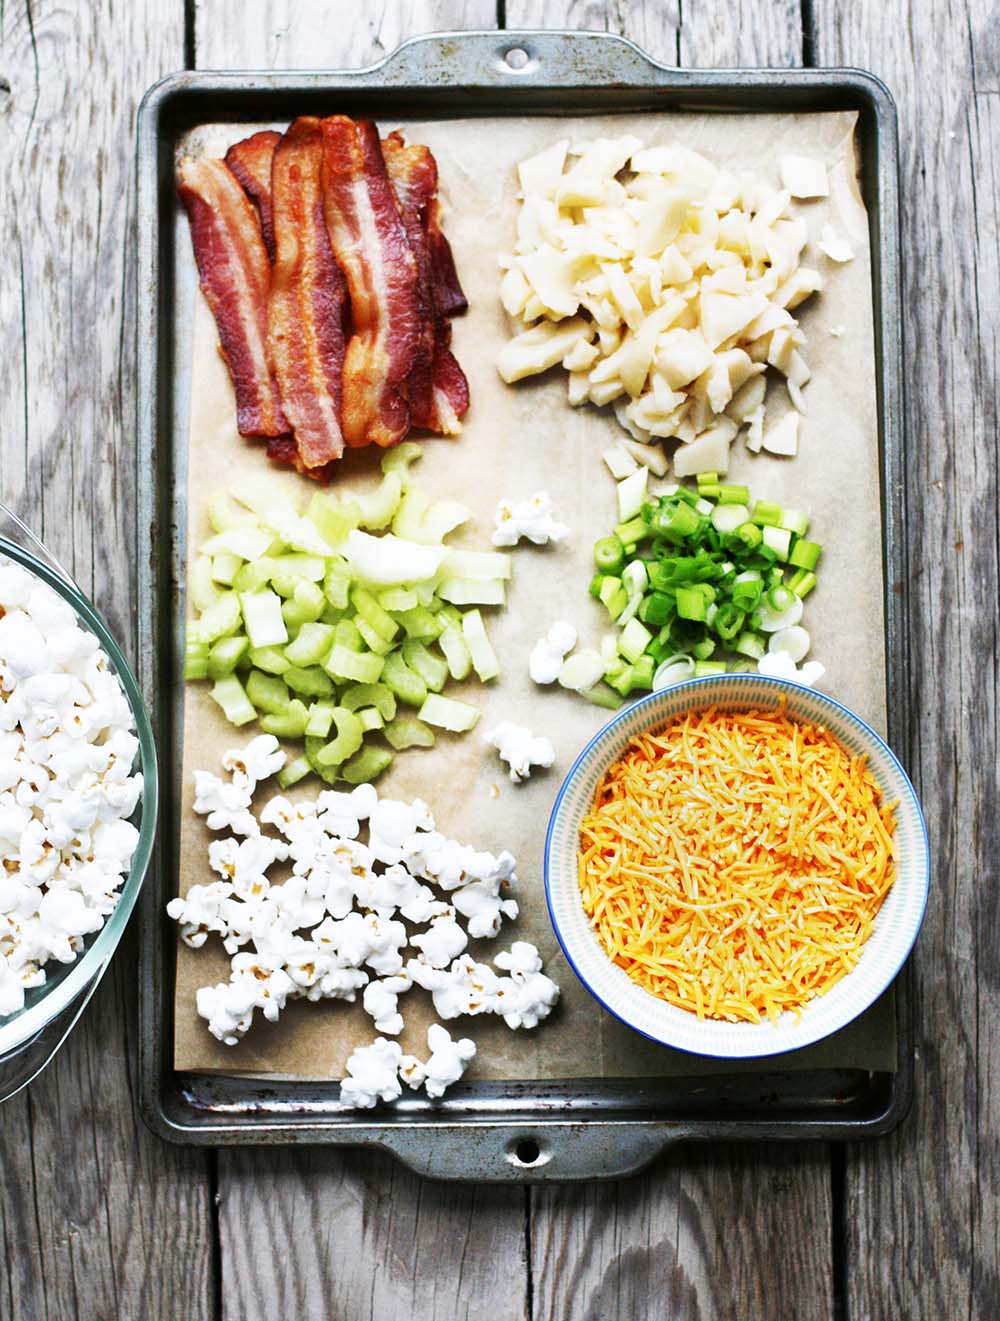 Ingredienti necessari per fare l'insalata di popcorn: clicca per la ricetta dettagliata!